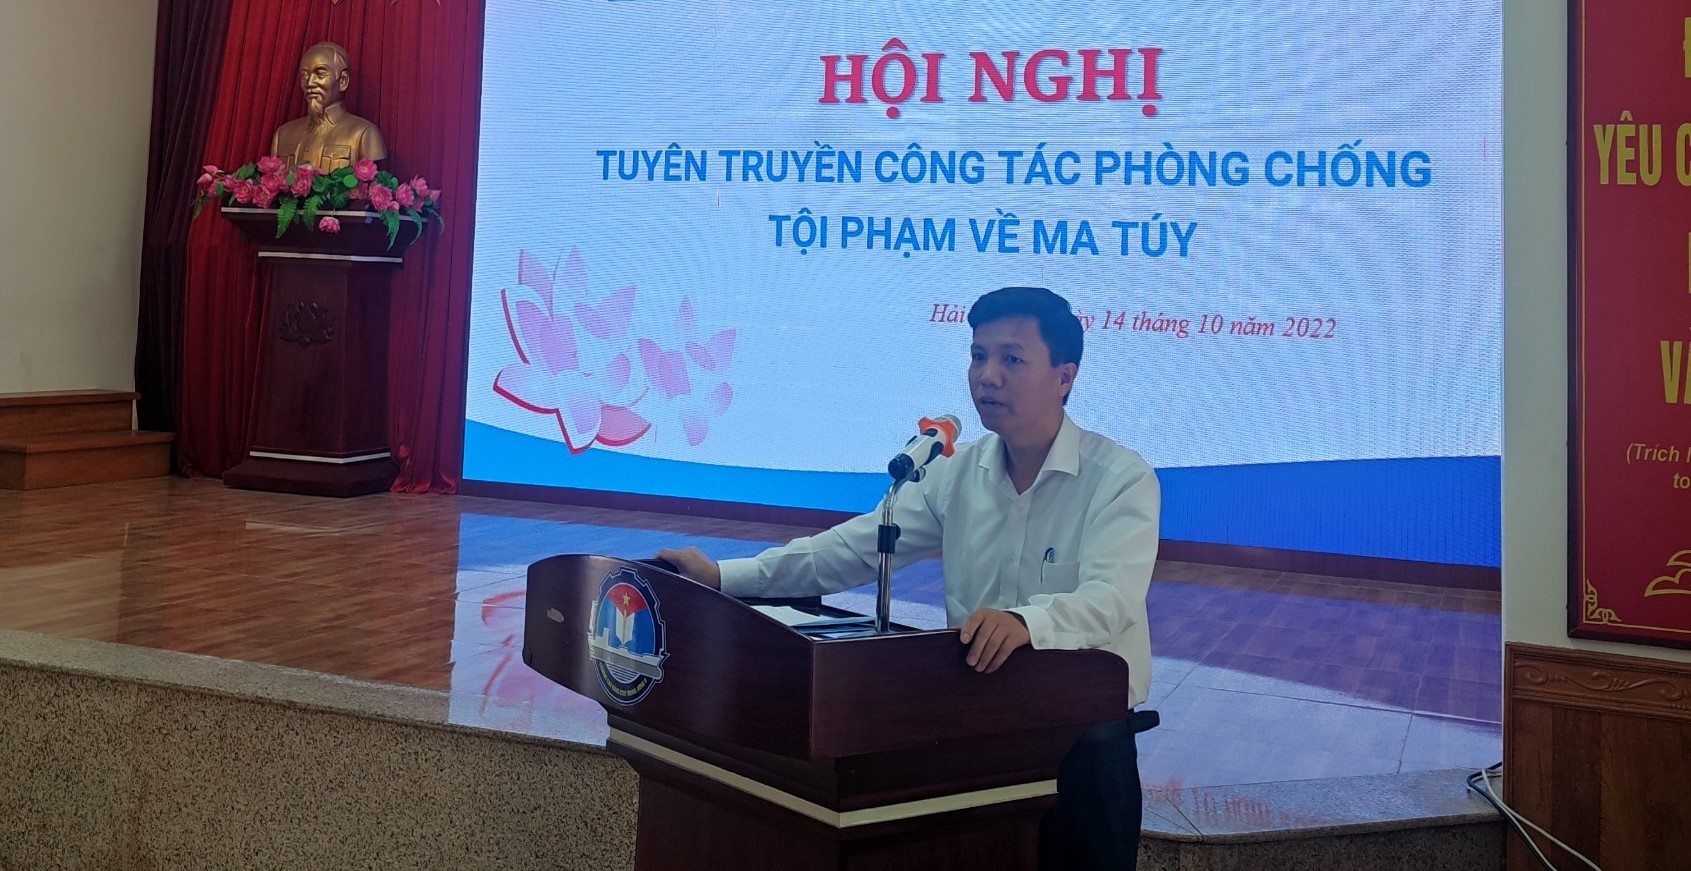 Đồng chí Nguyễn Duy Linh - Phó Hiệu Trưởng phát biểu tại chương trình